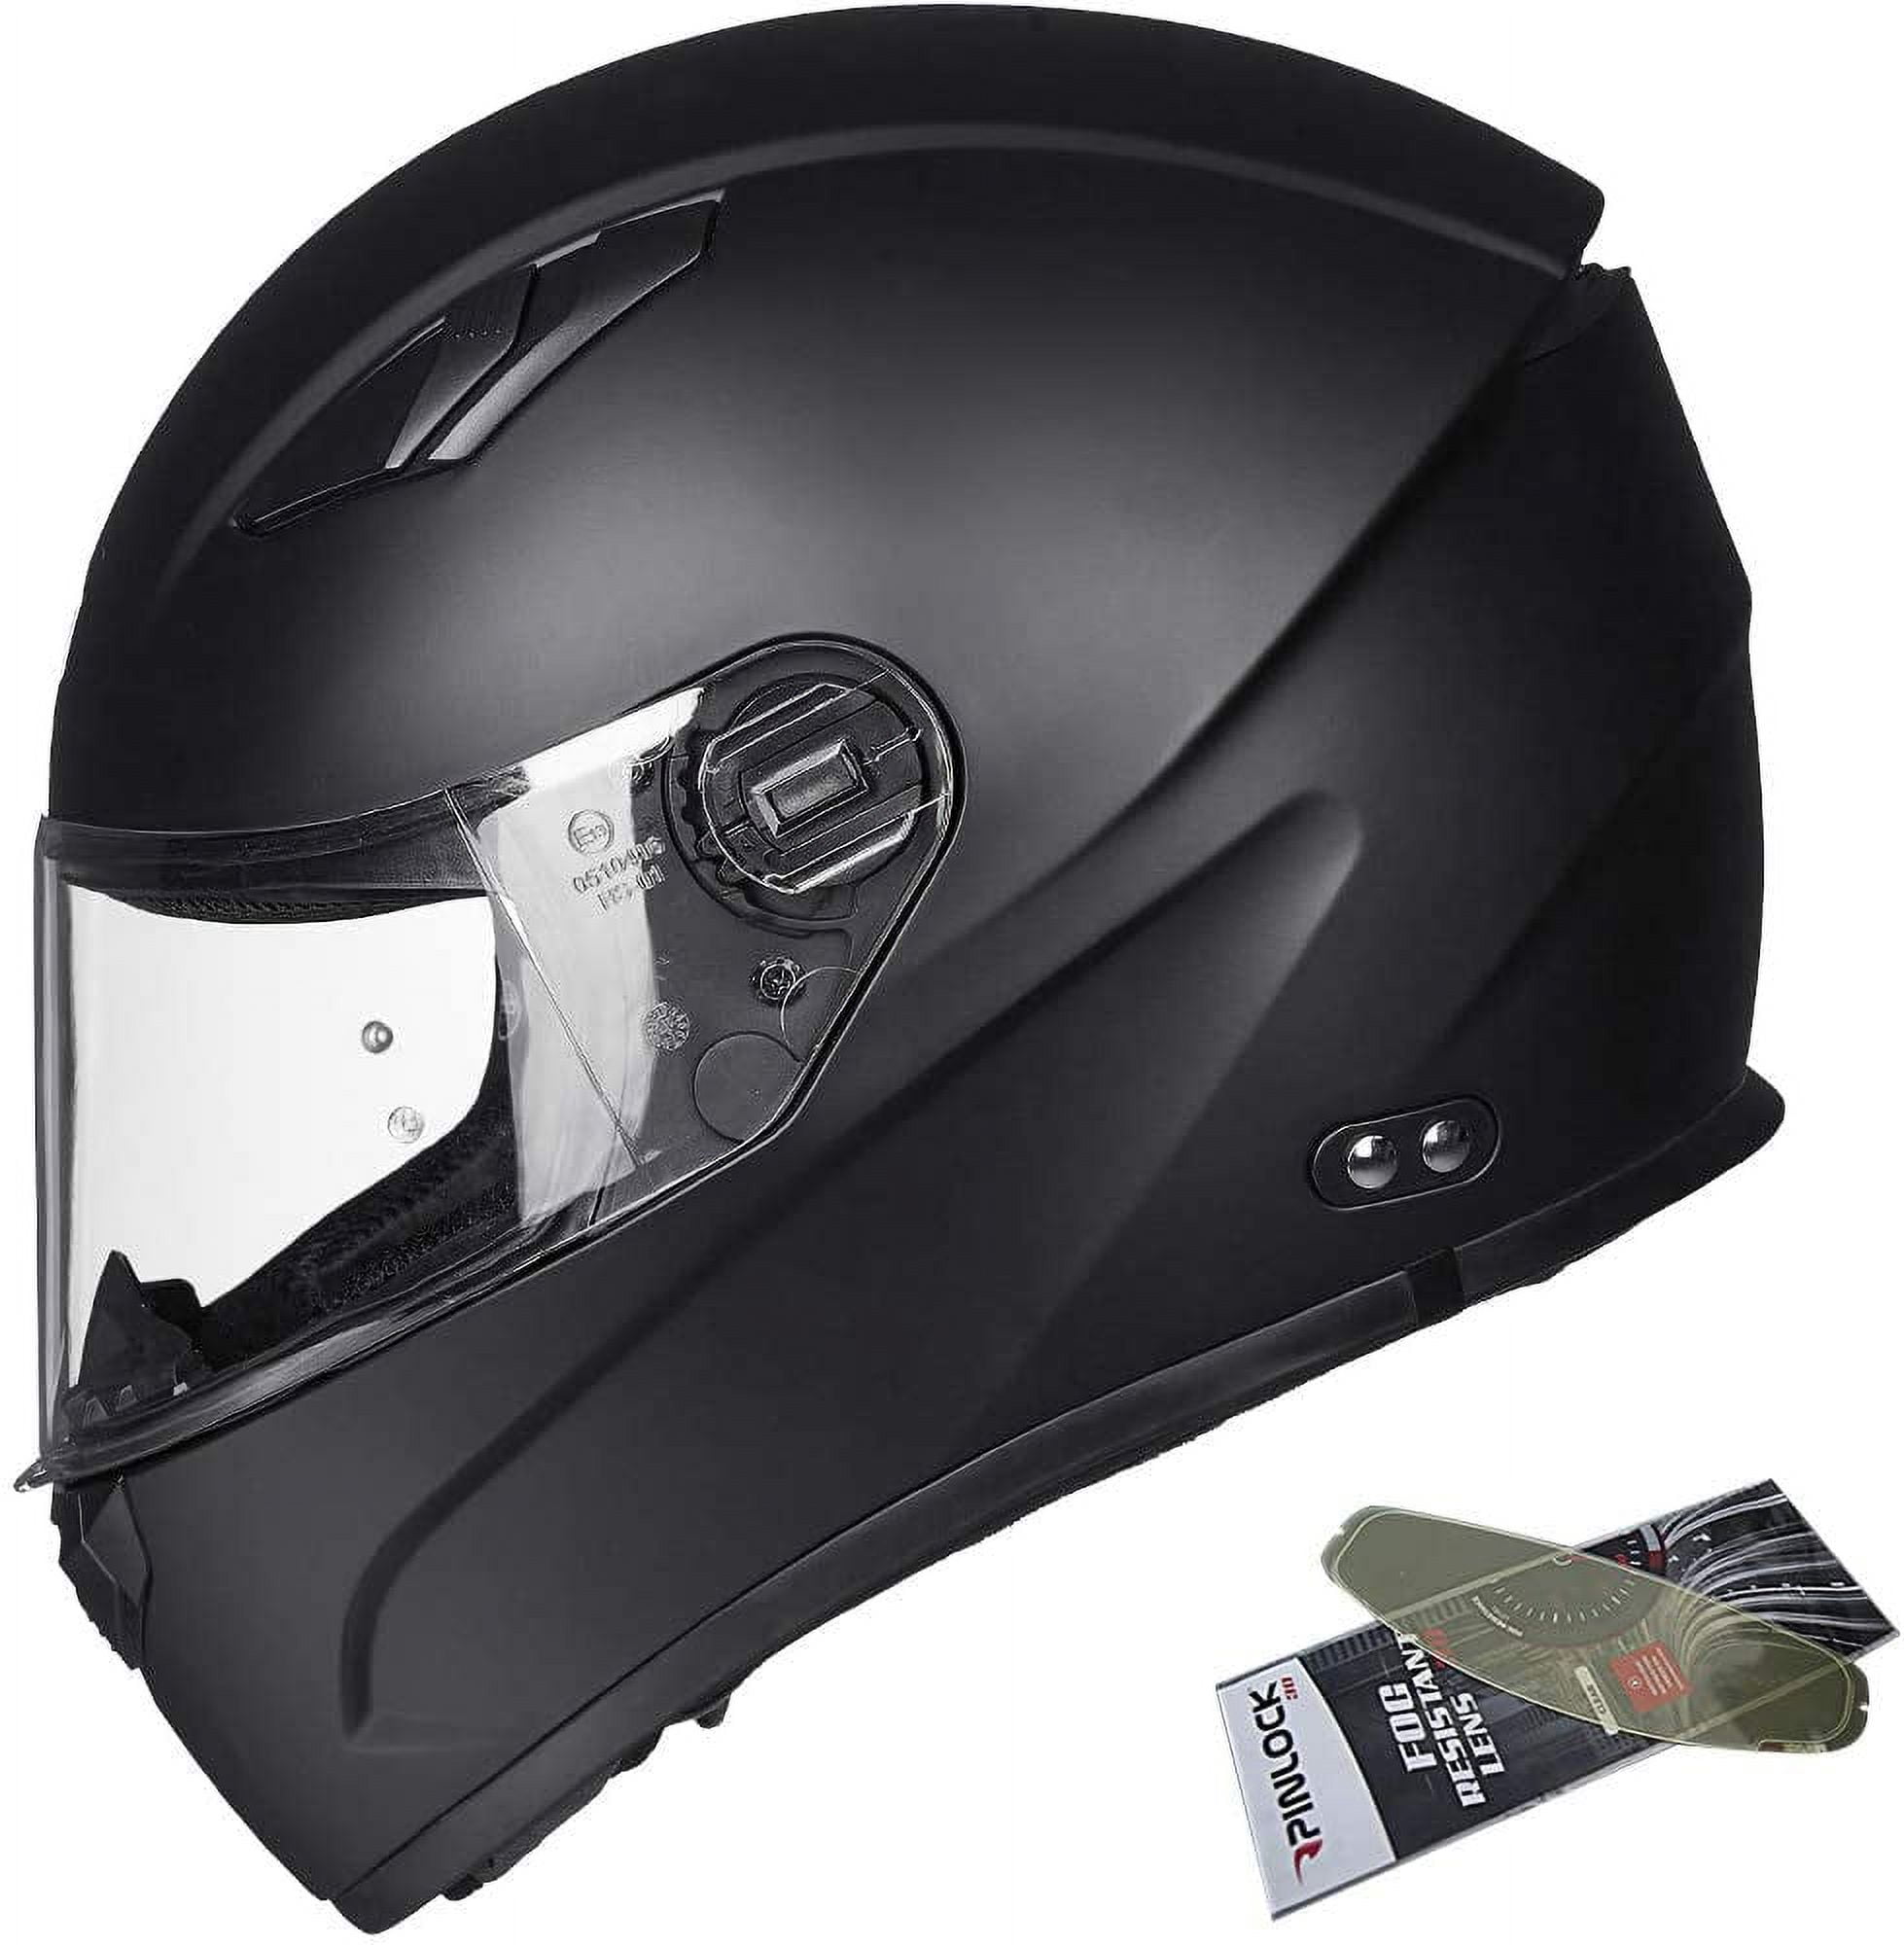 ILM Snowmobile Motocross Full Face Ultra Large Motorcycle Helmet Pinlock  Insert Anti-Fog Visor ATV Casco for Men Women DOT